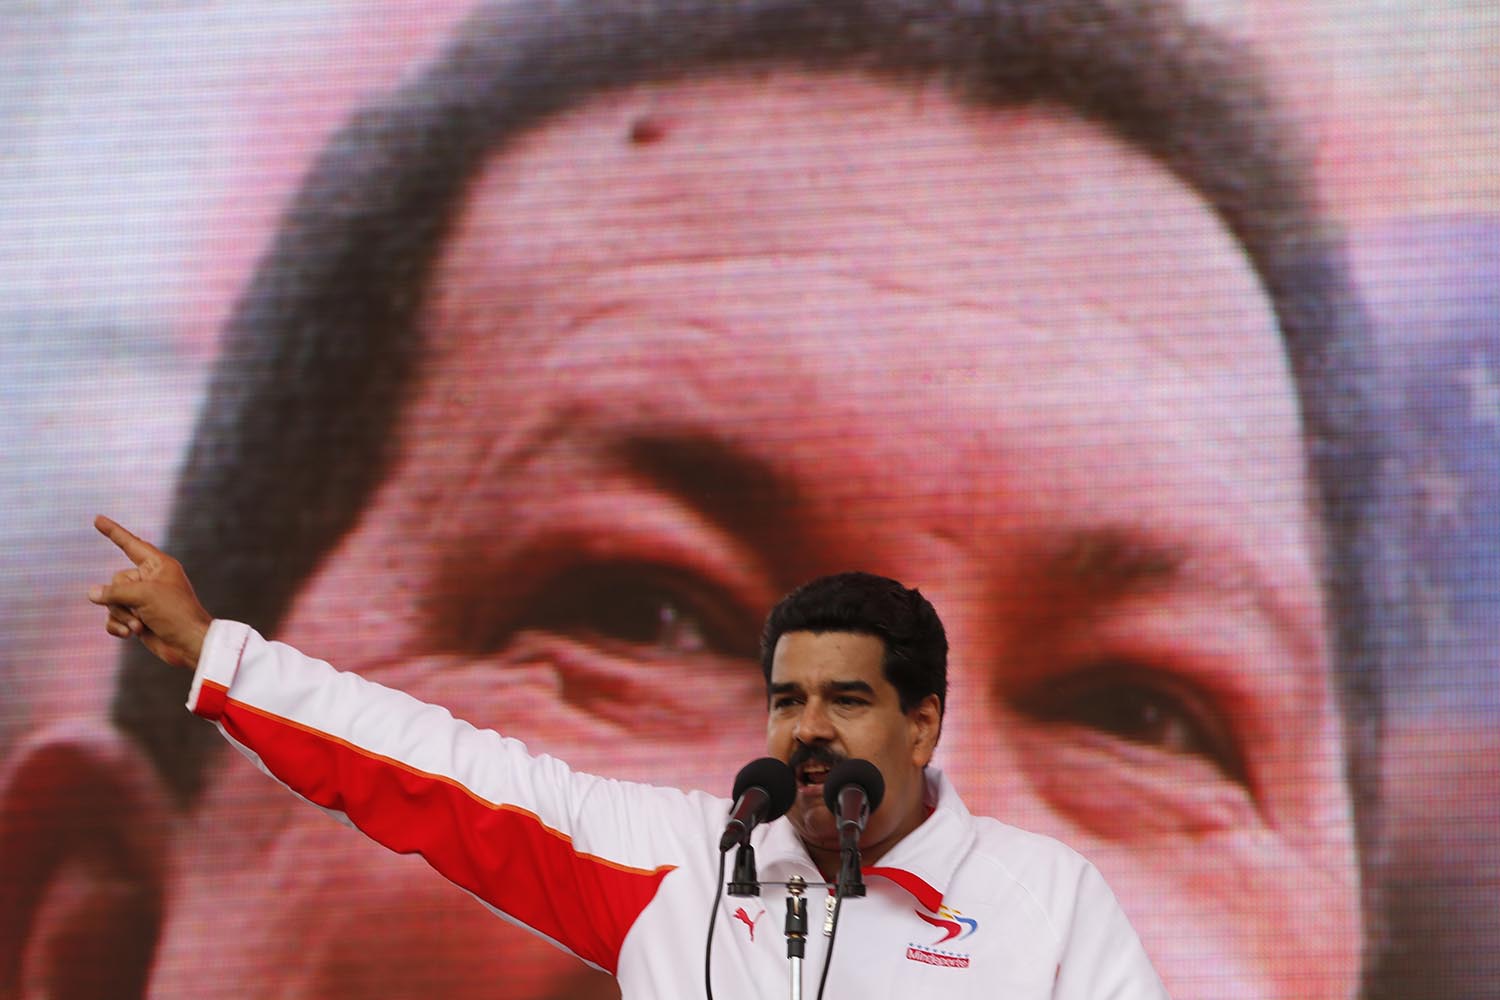 Especial Maduro. El presidente ha logrado 'poderes especiales' para gobernar Venezuela